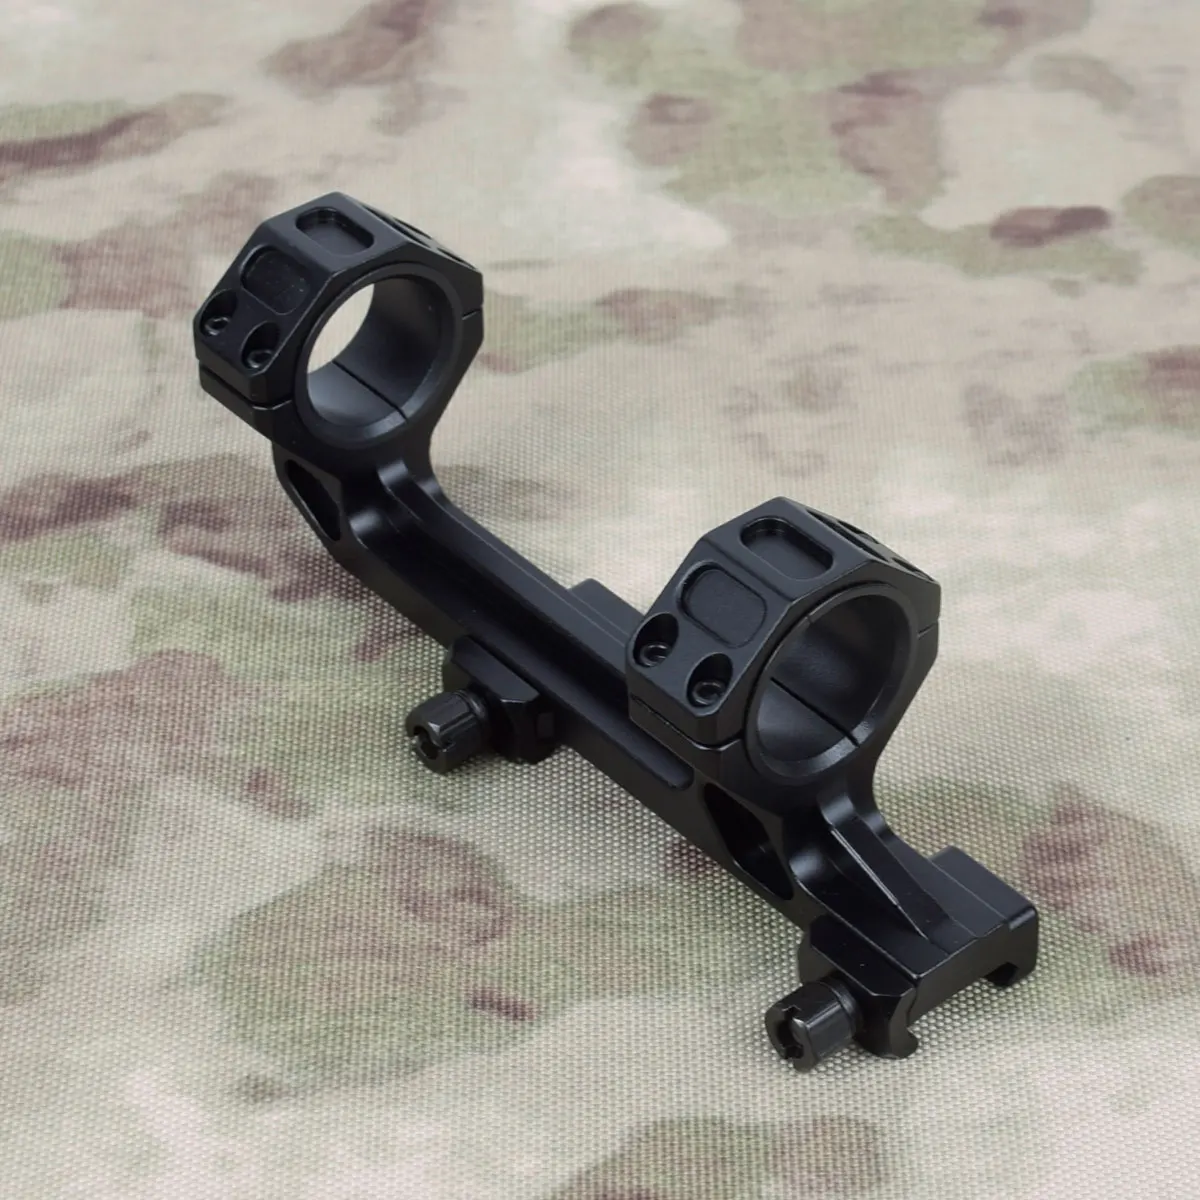 tática: M4, M16 Ar15 25,4 mm rifle de montagem âmbito do airsoft gun 20mm Picatinny rail escopos monta pistolas pneumáticas anéis duplos de caça Imagem 3